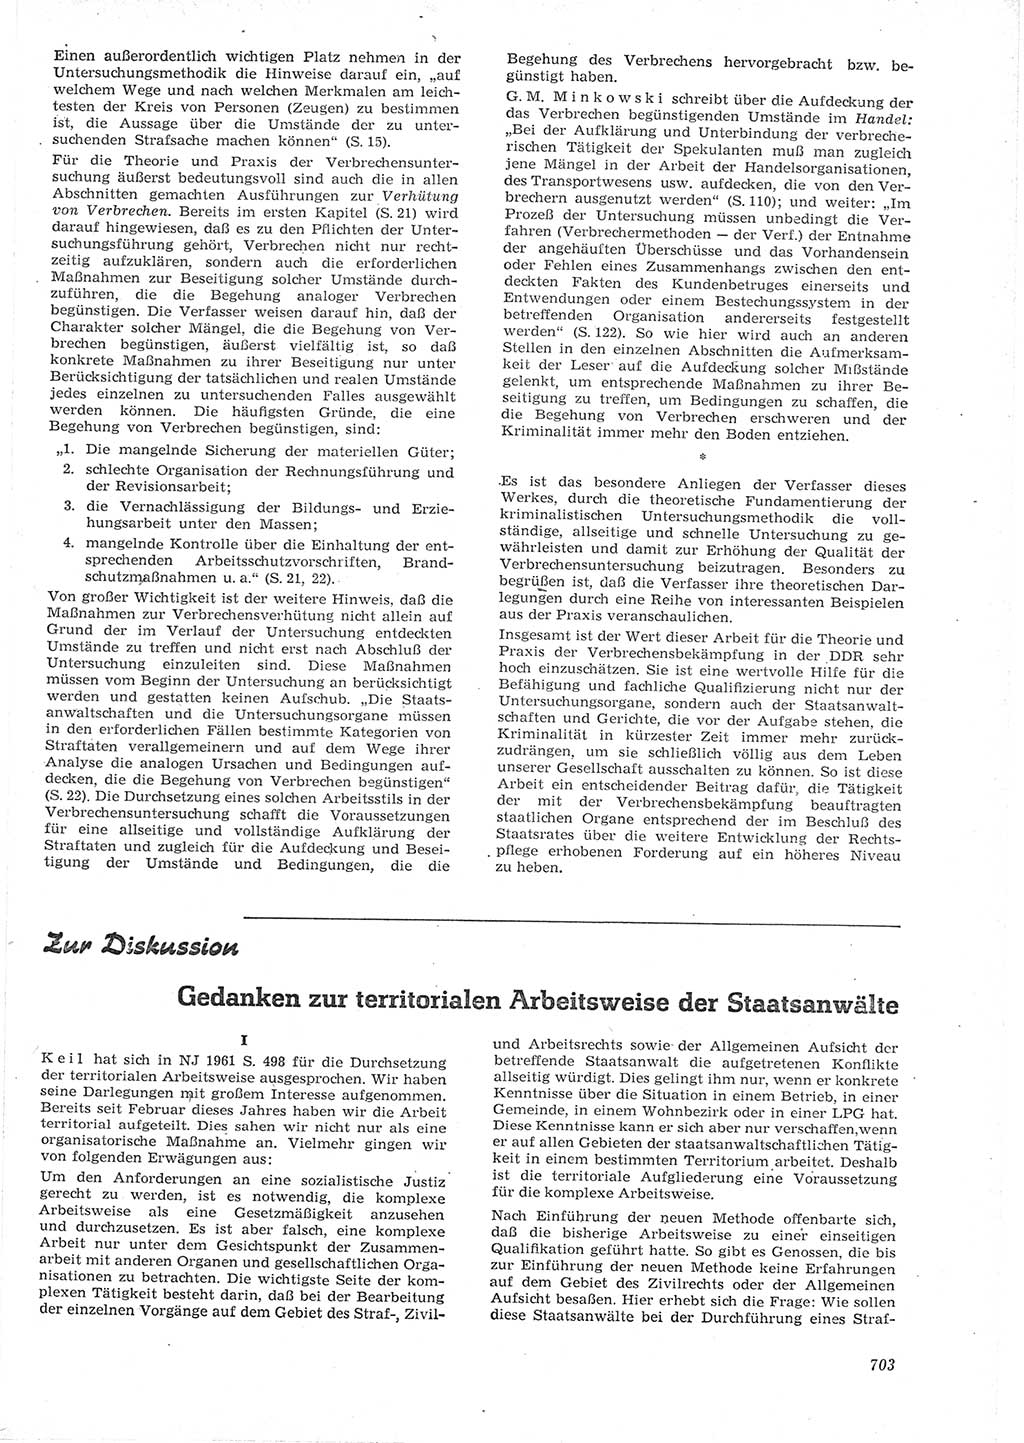 Neue Justiz (NJ), Zeitschrift für Recht und Rechtswissenschaft [Deutsche Demokratische Republik (DDR)], 15. Jahrgang 1961, Seite 703 (NJ DDR 1961, S. 703)